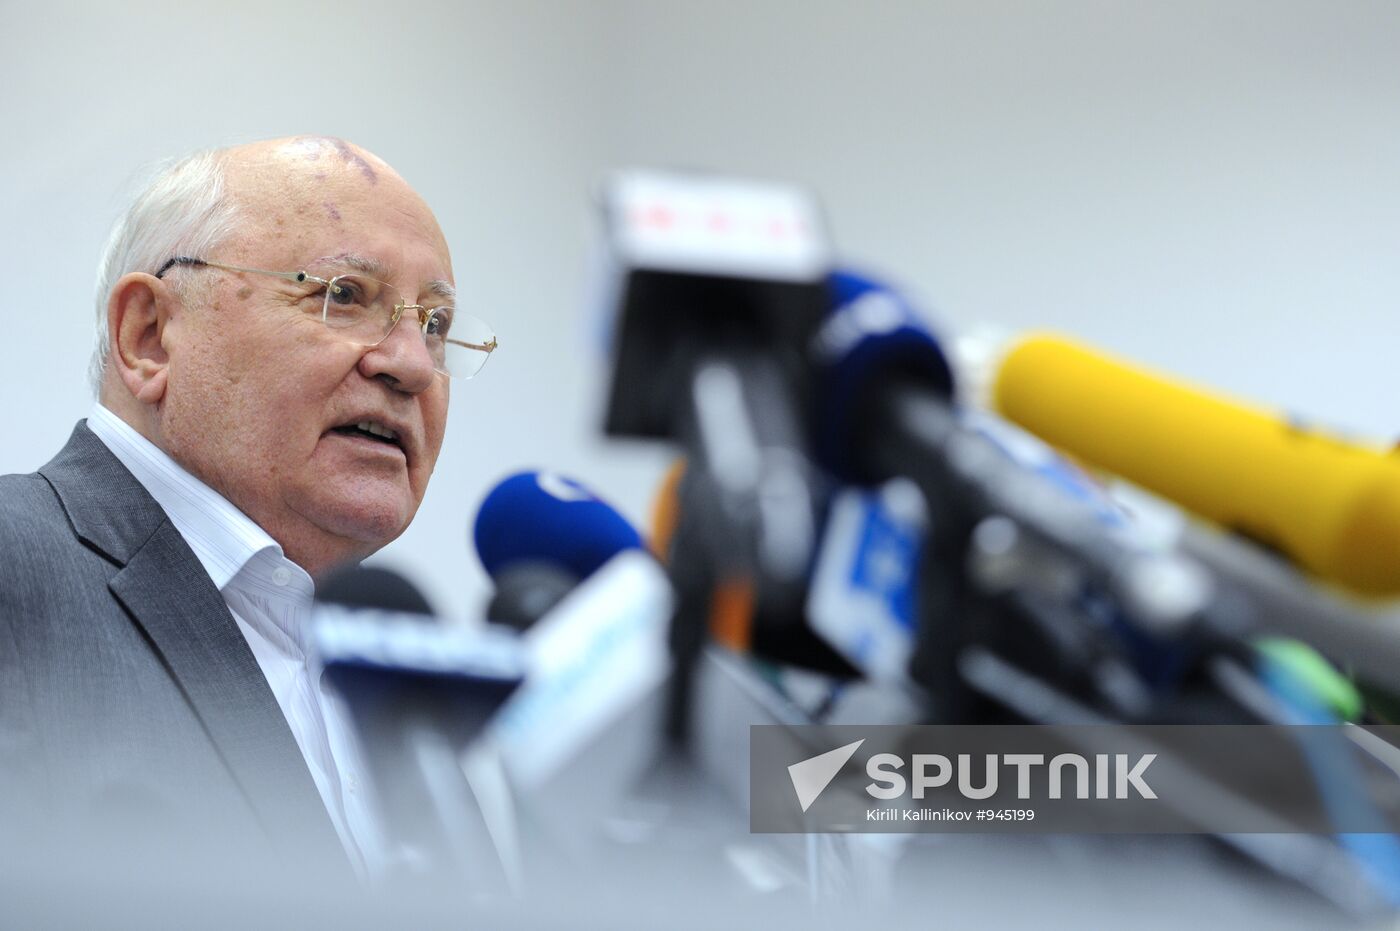 Mikhail Gorbachev gives news conference